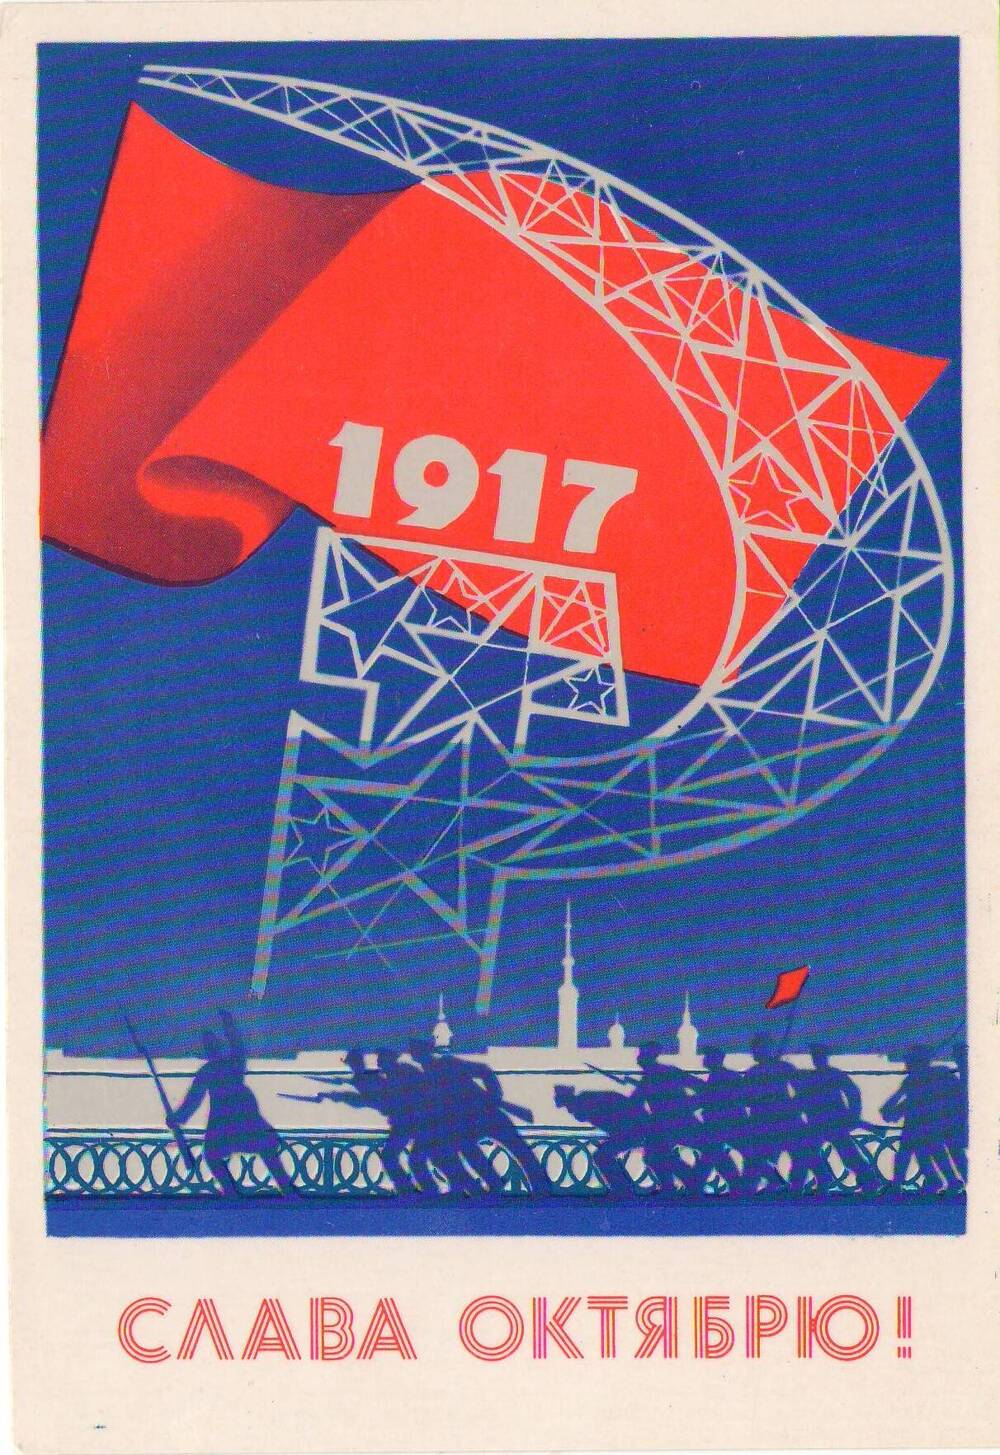 Открытка цветная с надписью «Слава октябрю!» 1917.